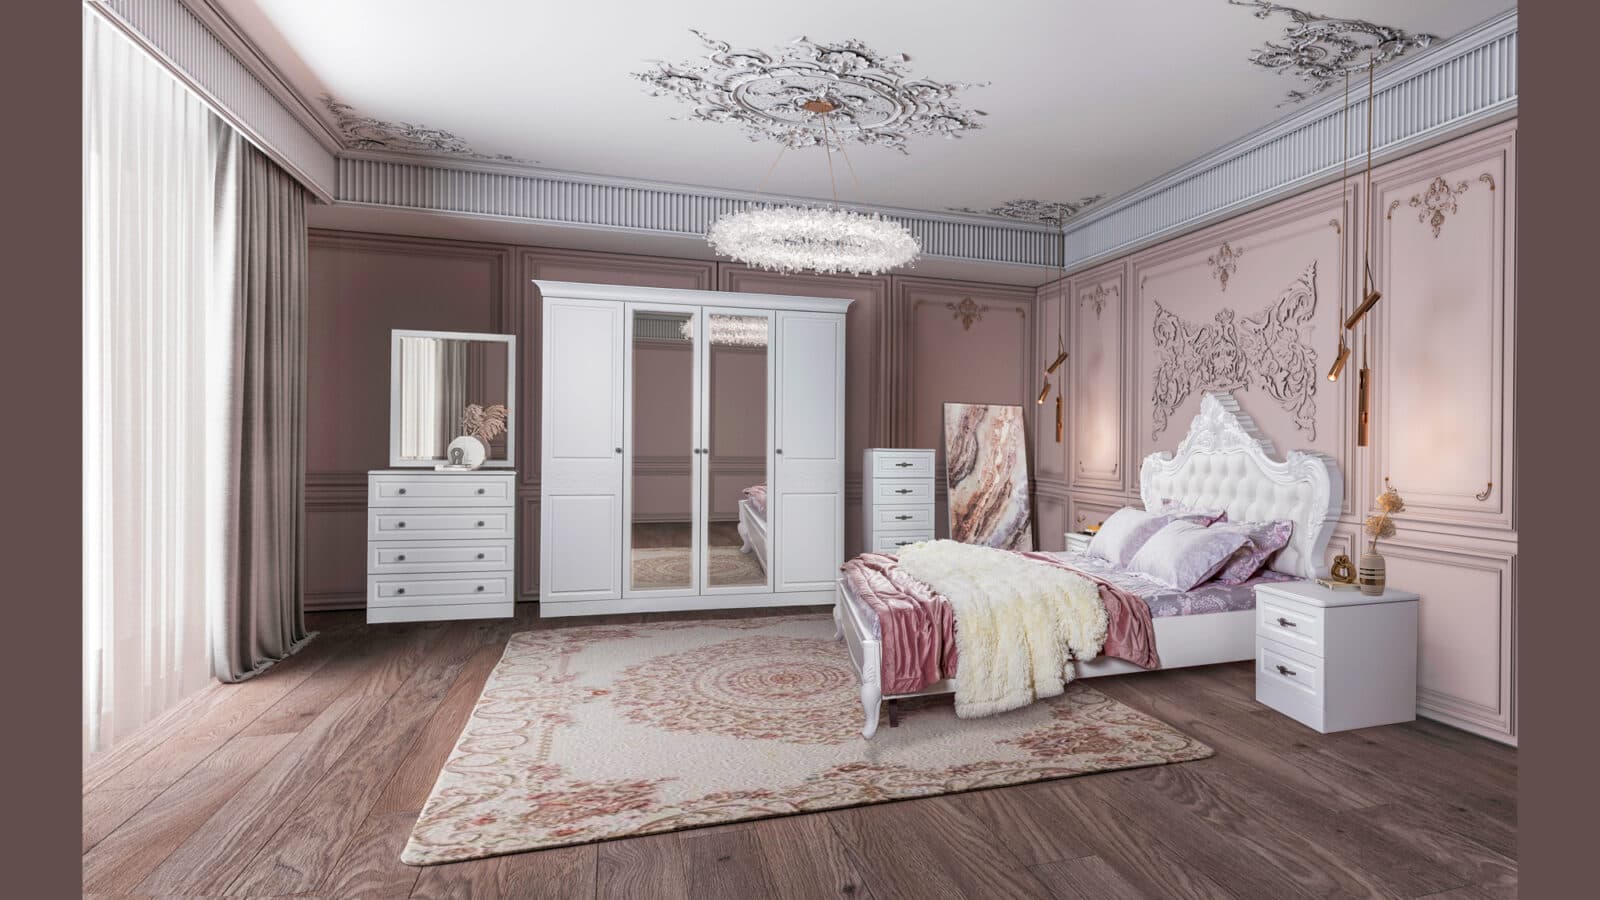 Bedroom furniture "Florentina" | Furniture factory SKFM